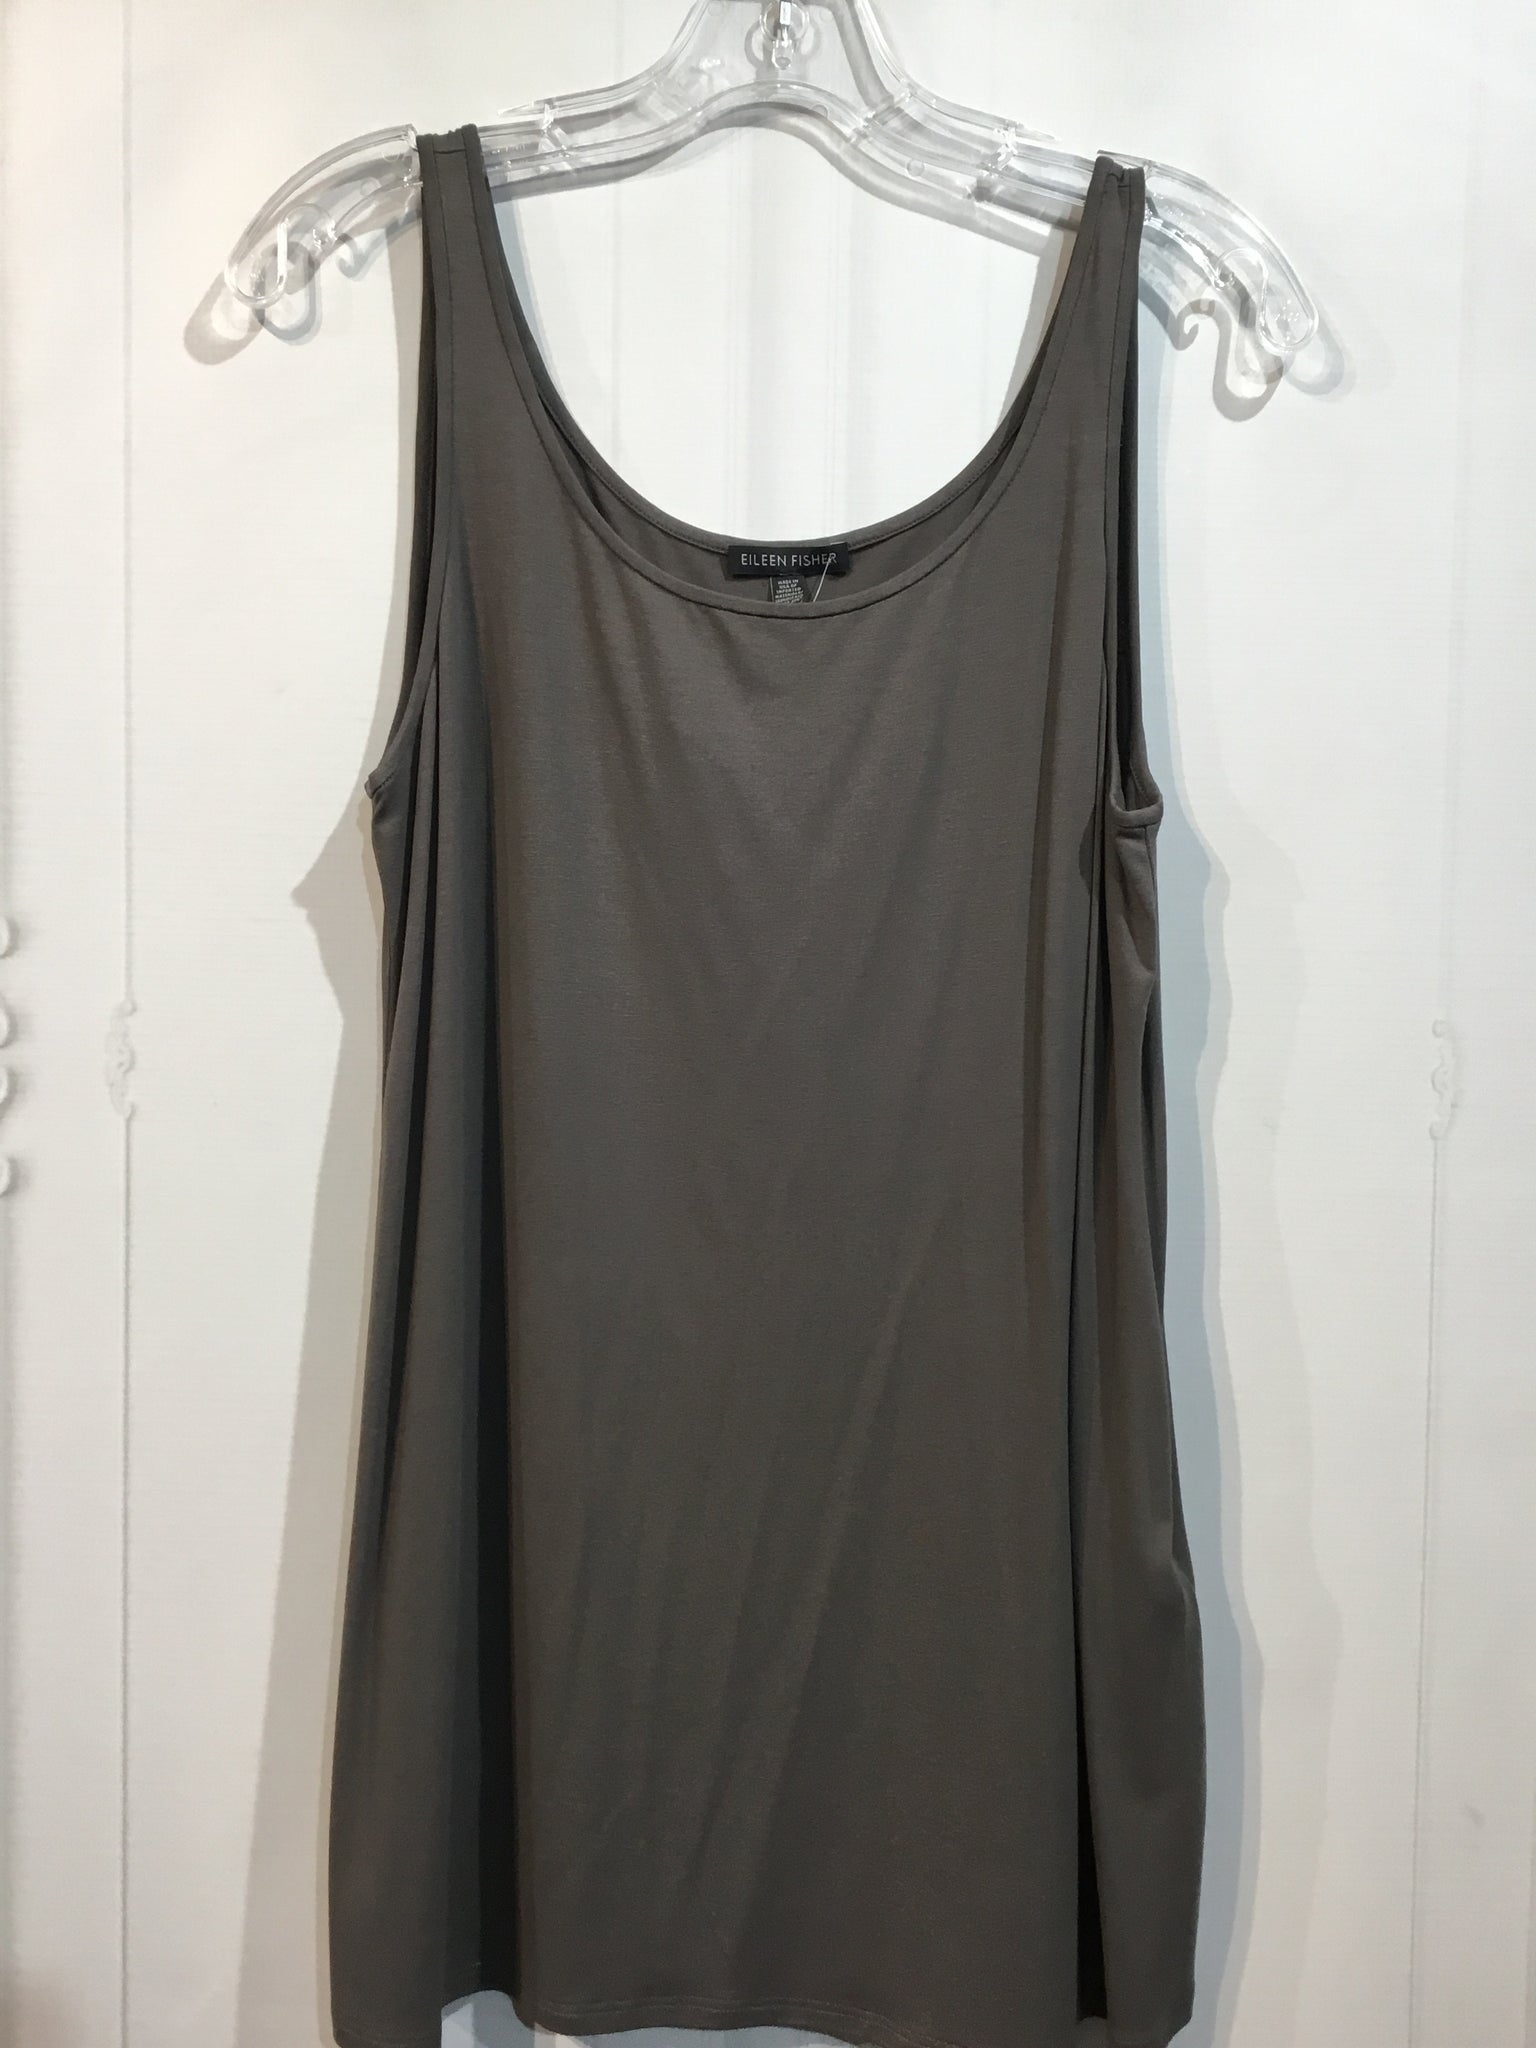 Eileen Fisher Size S/4-6 Dark Grey Tops